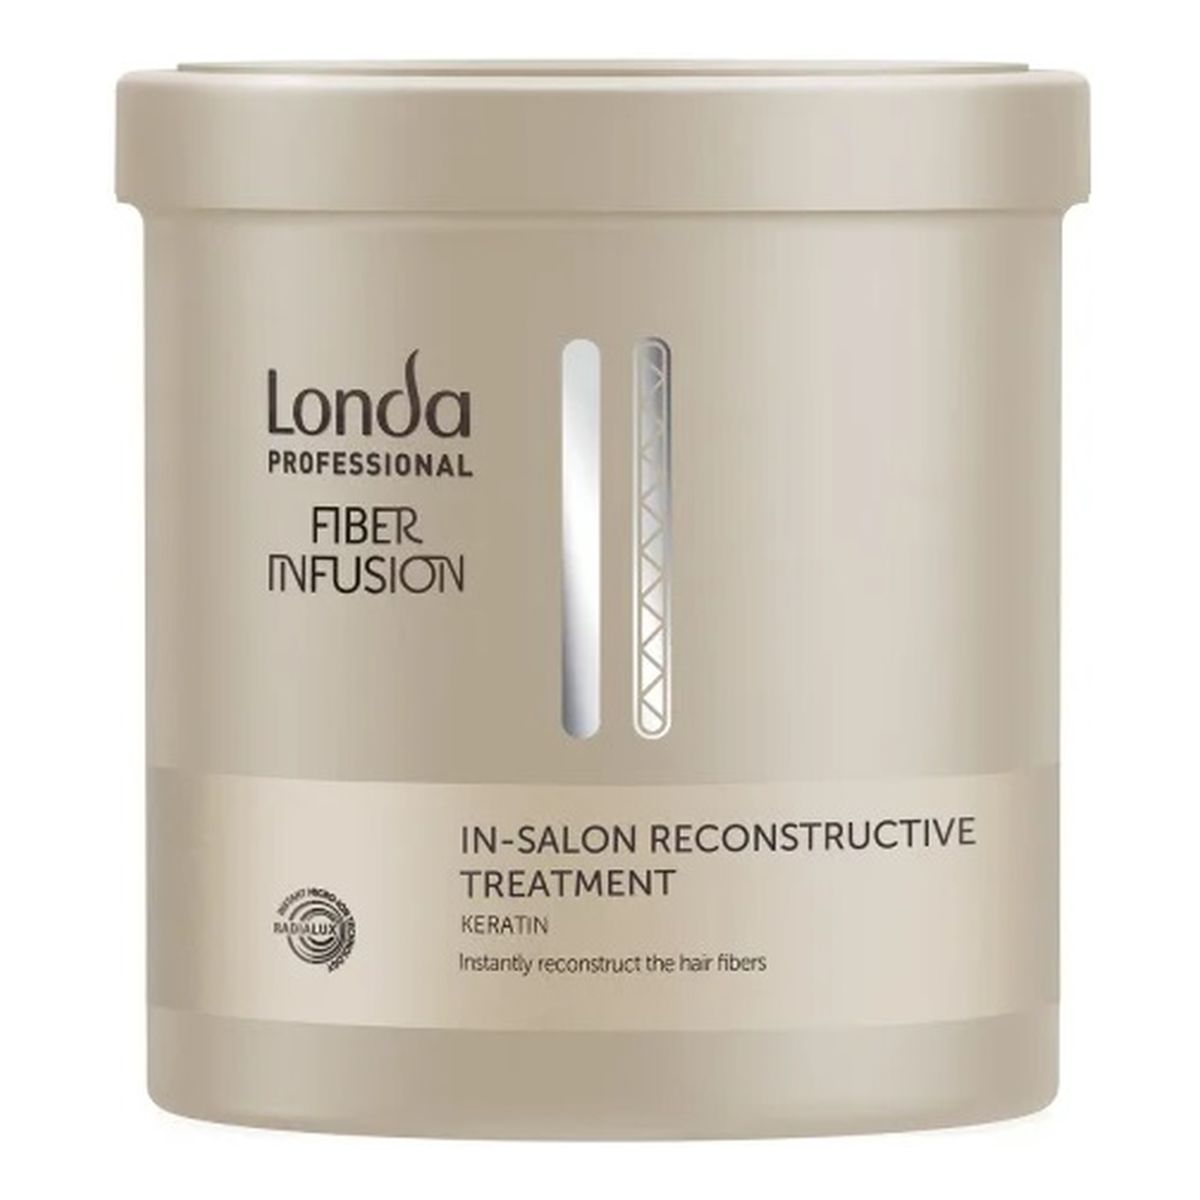 Londa Professional Fiber infusion in-salon reconstructive treatment maska do kuracji odbudowującej włókna włosów 750ml